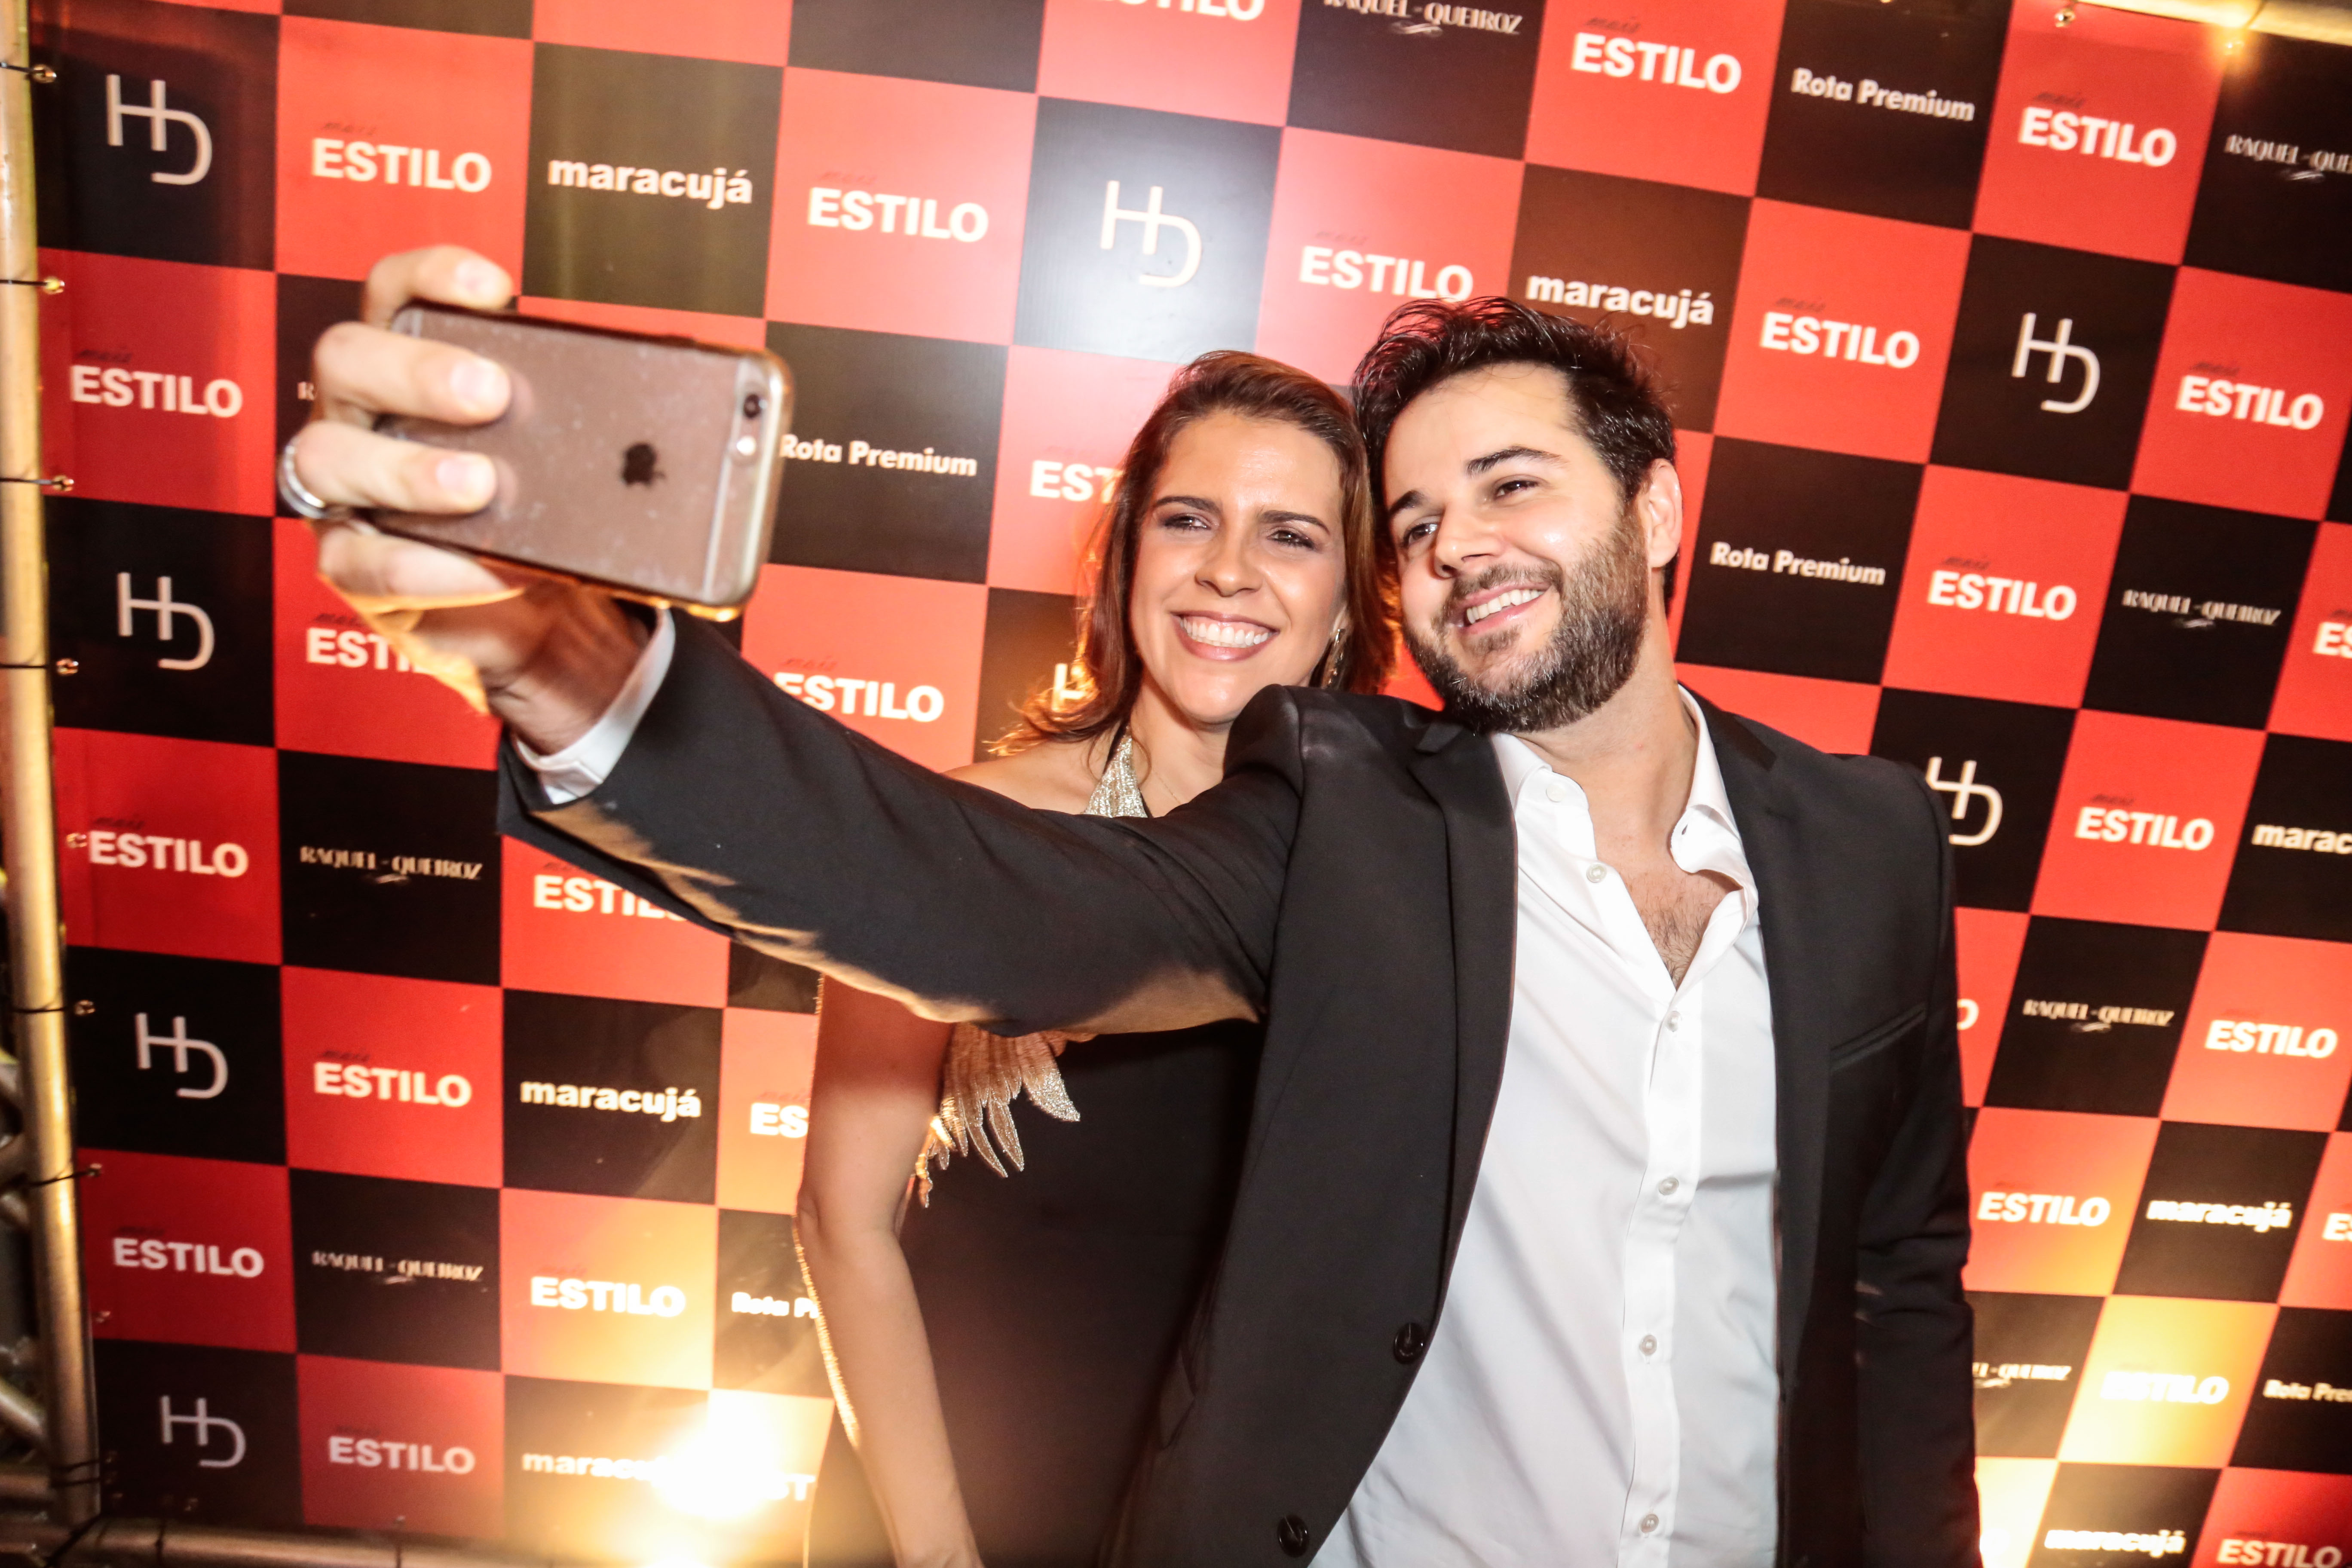 Momento selfie: Cristina Melo e Heracliton Diniz - Crédito: Gleyson Ramos/Divulgação